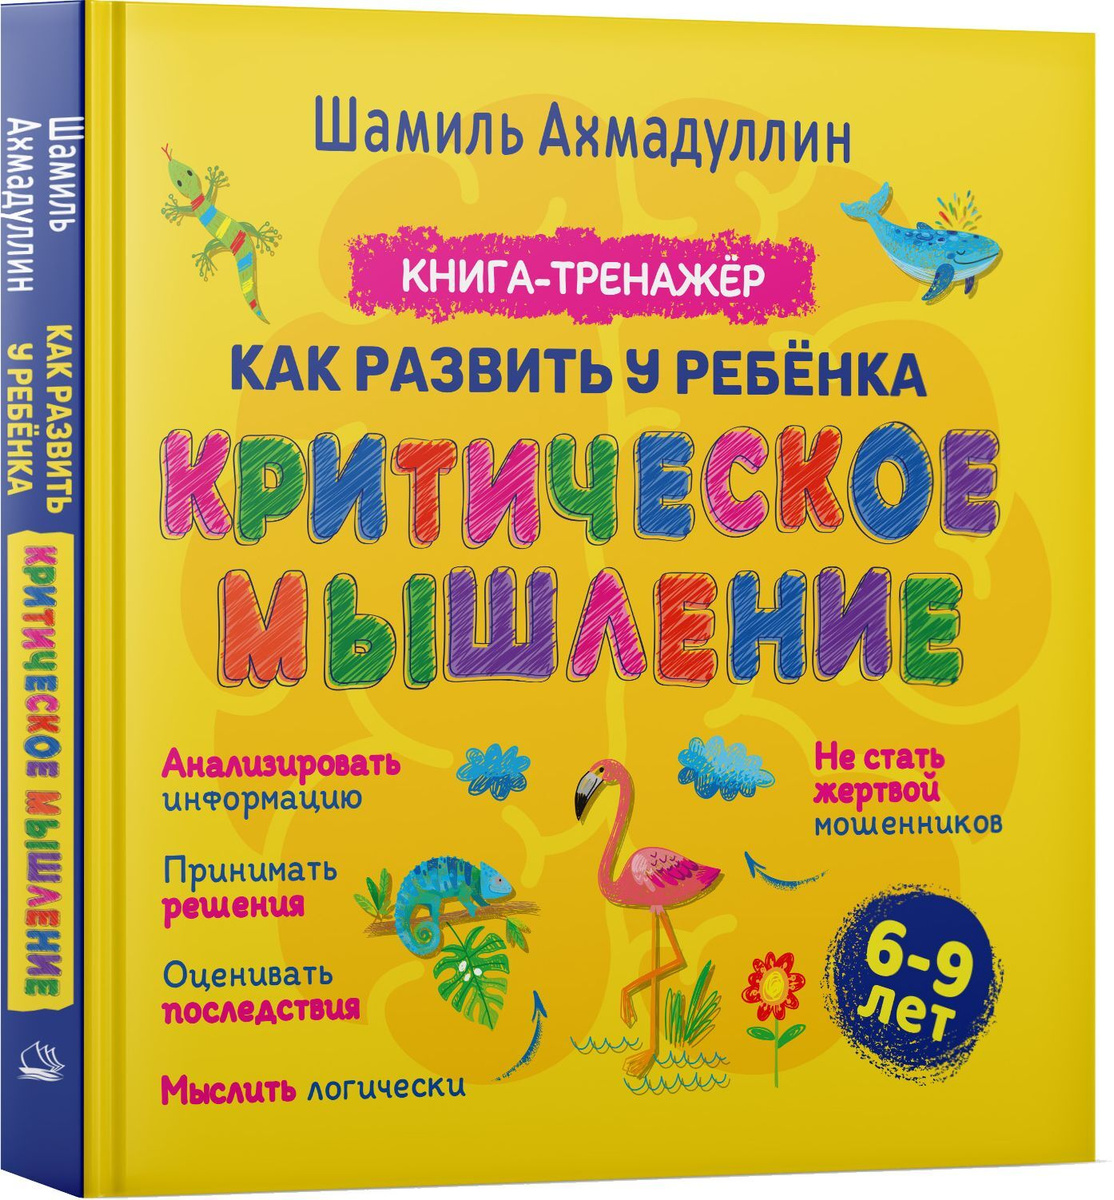 Критическое мышление. Книга-тренинг для детей 6-9 лет | Ахмадуллин Шамиль Тагирович  #1